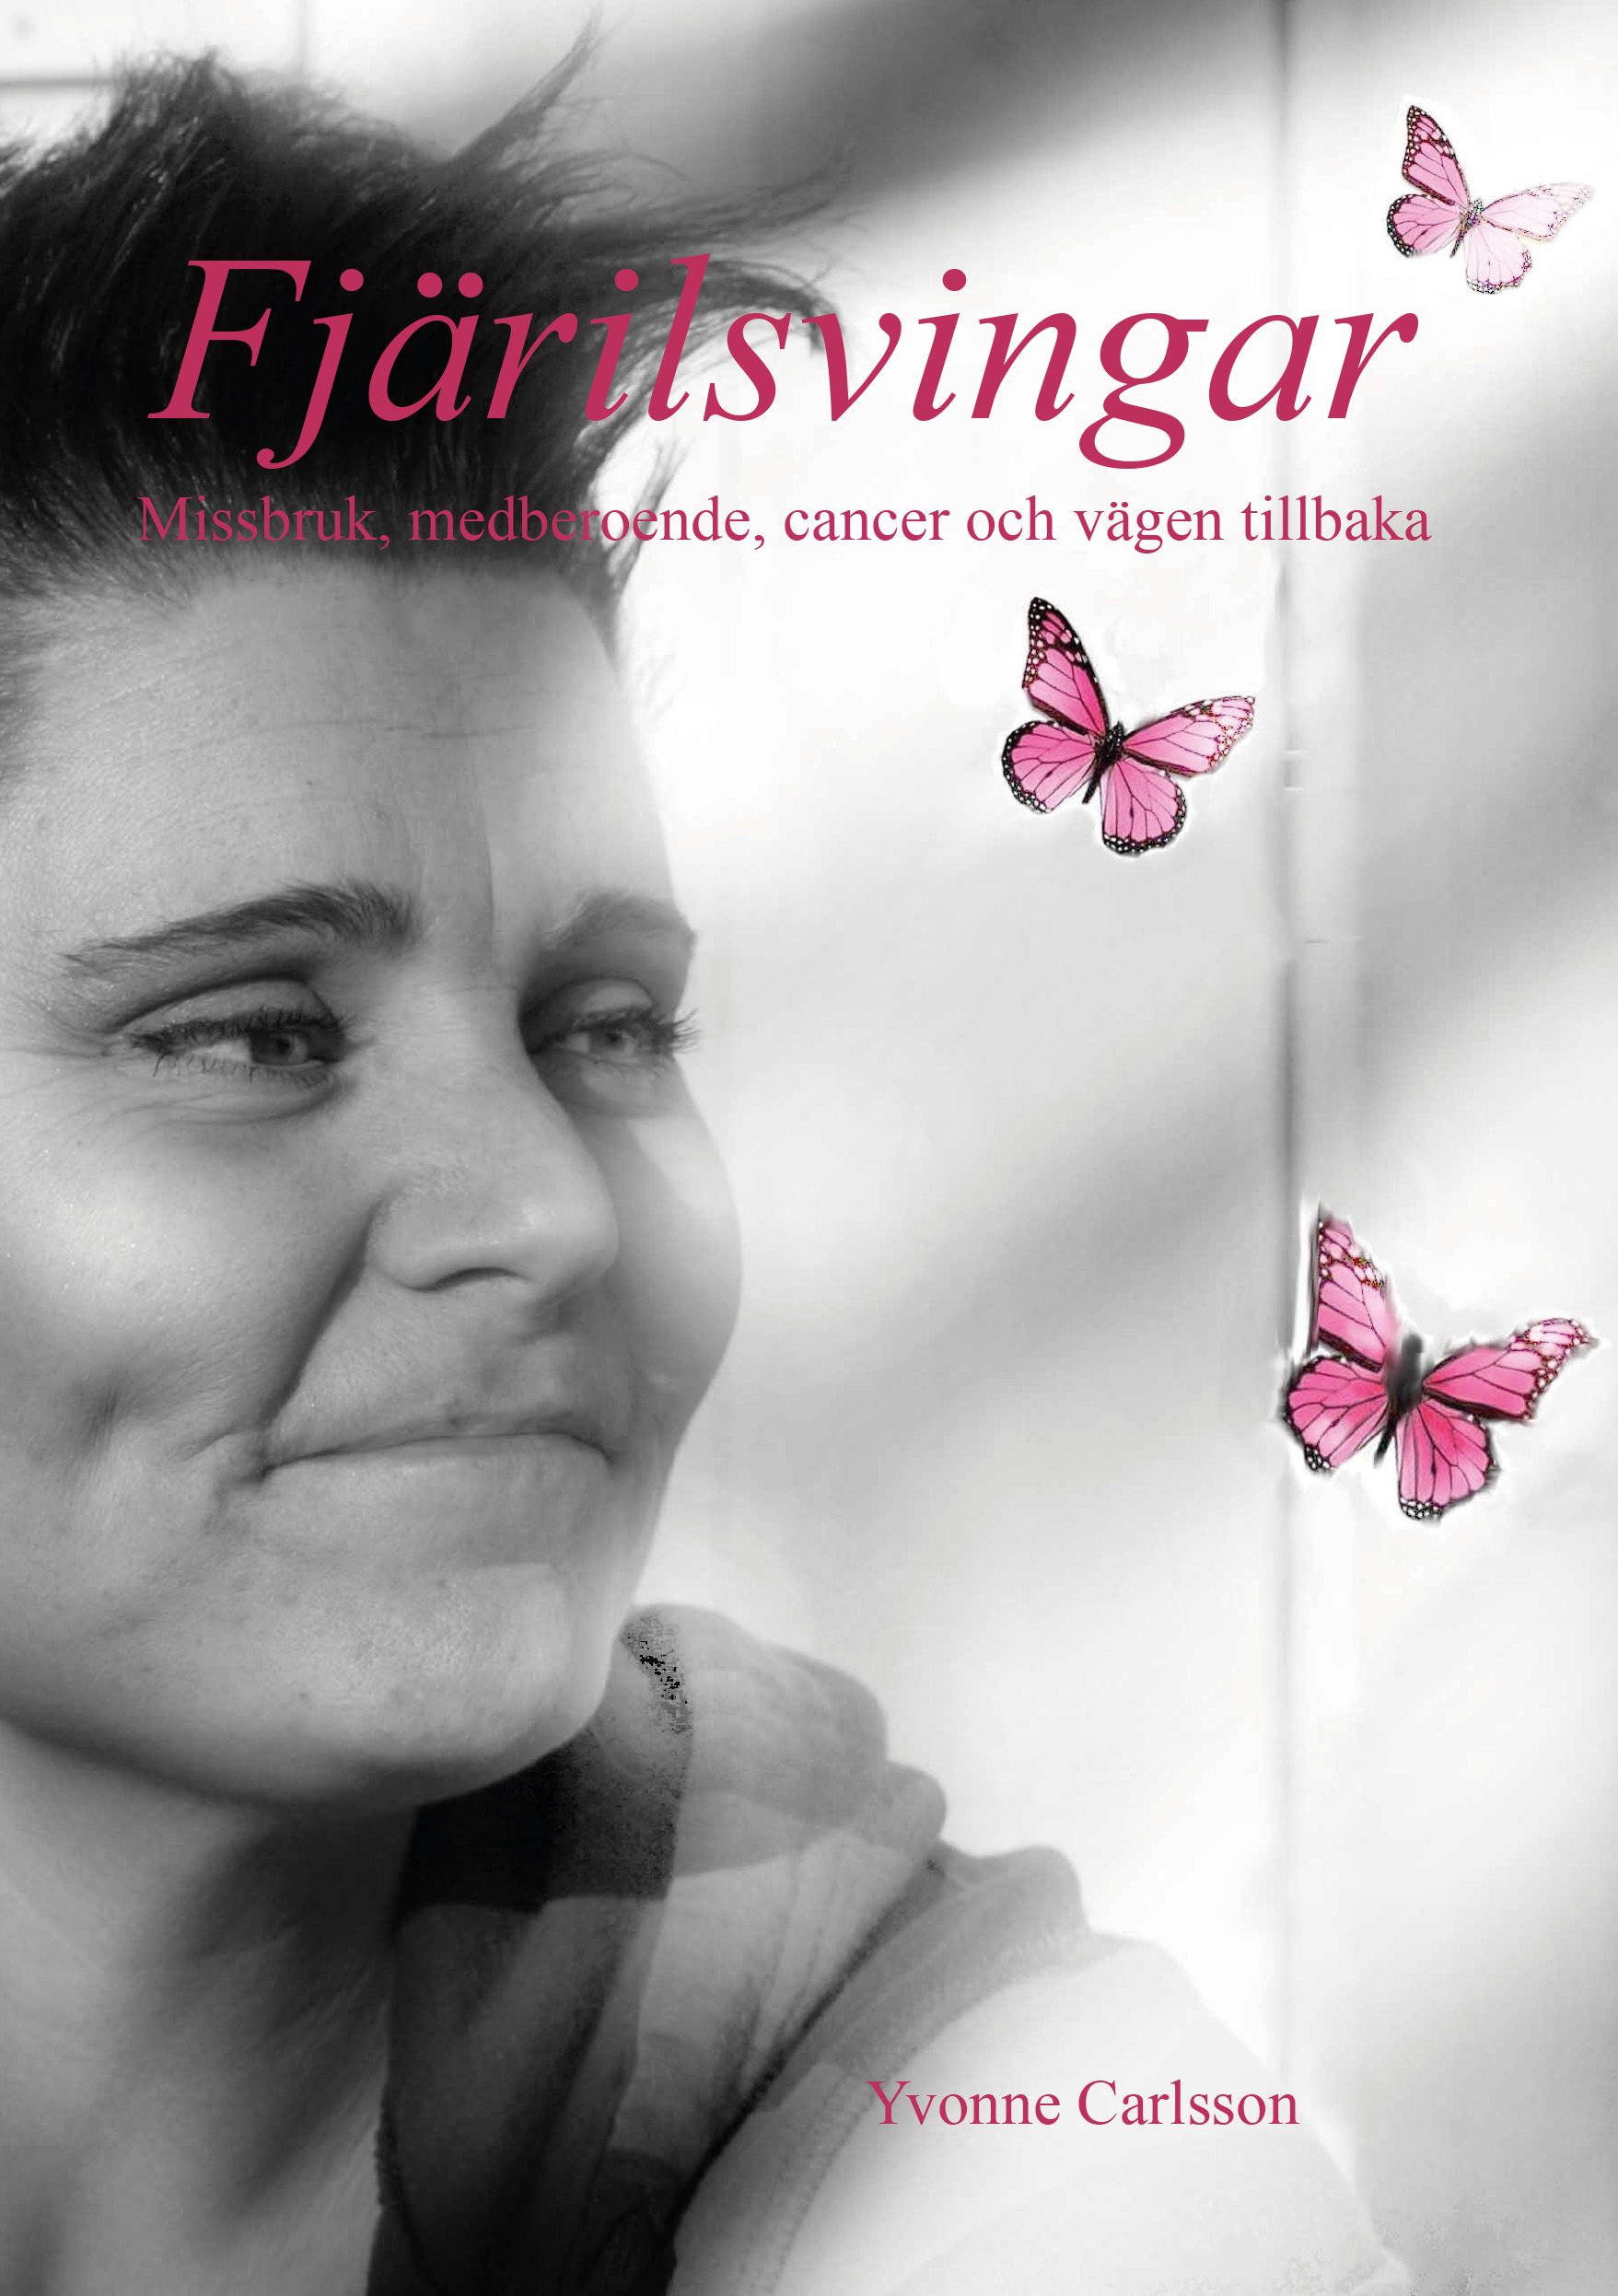 Fjärilsvingar - Missbruk, medberoende, cancer och vägen tillbaka, eBook by Yvonne Carlsson